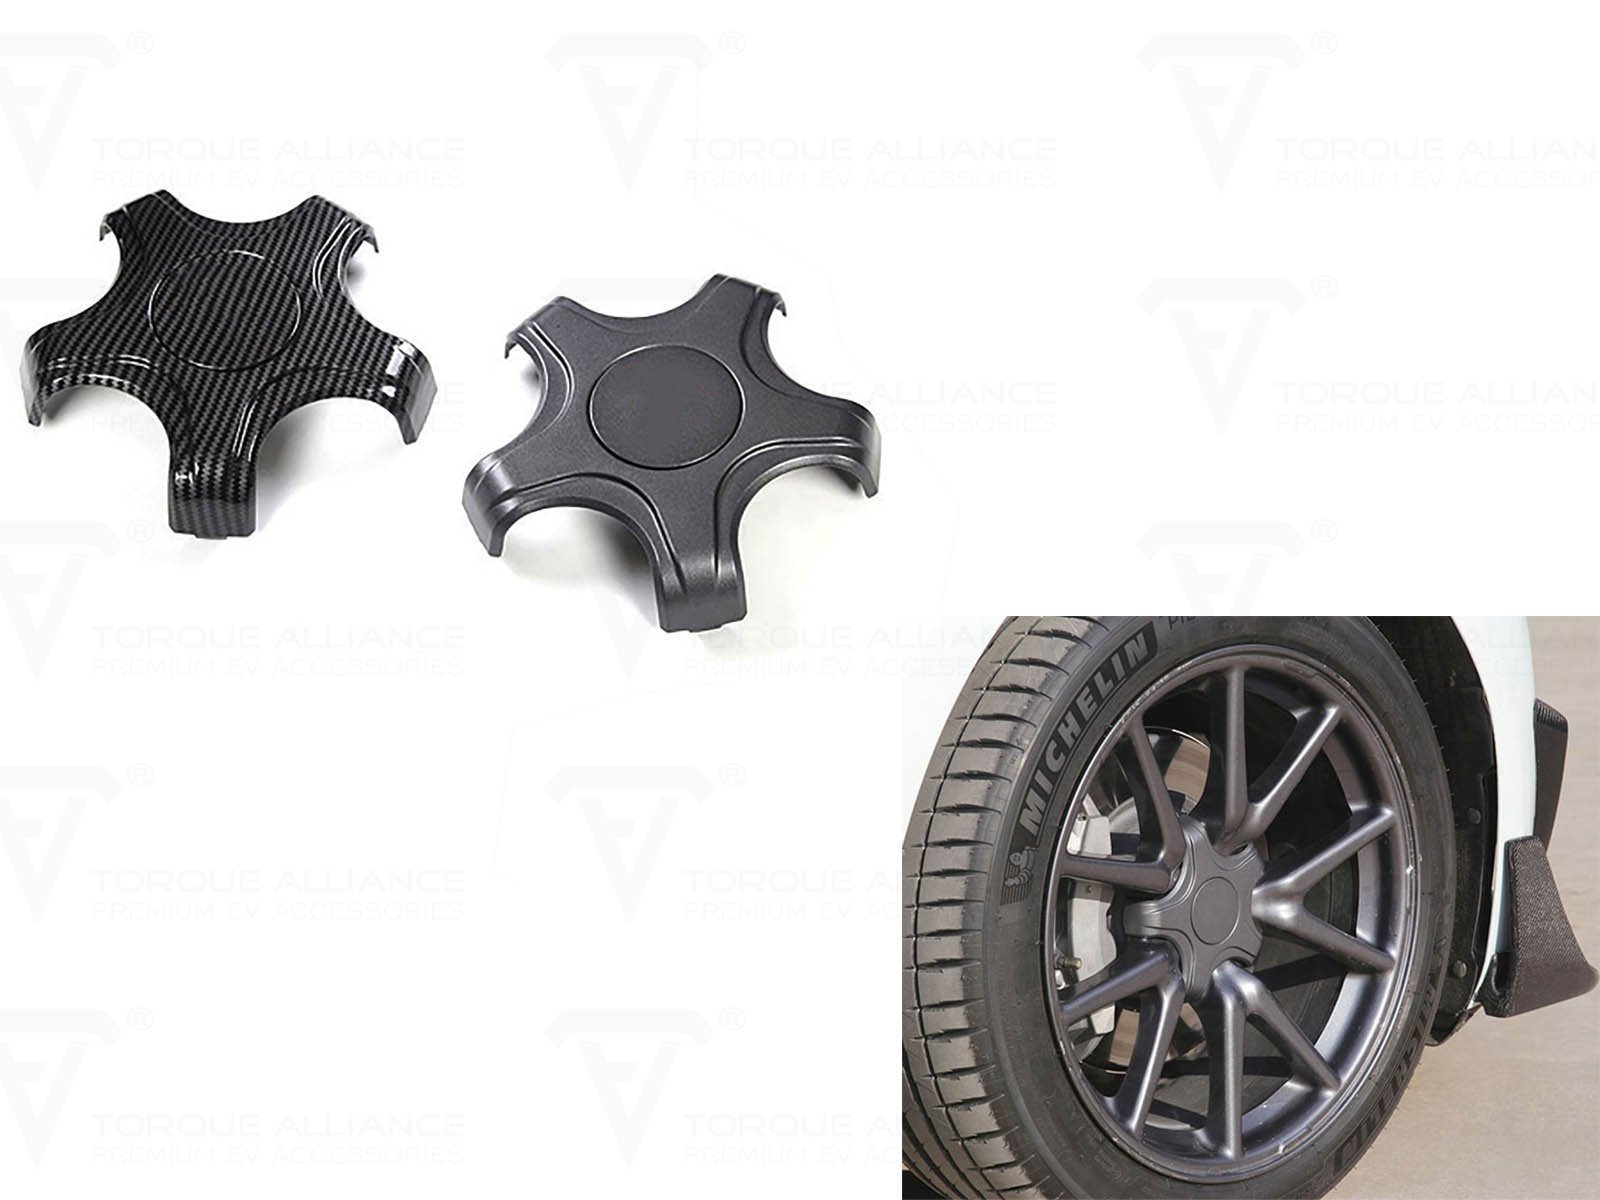 Modèle 3 : Enjoliveurs de roues Pentagram Aero - Torque Alliance